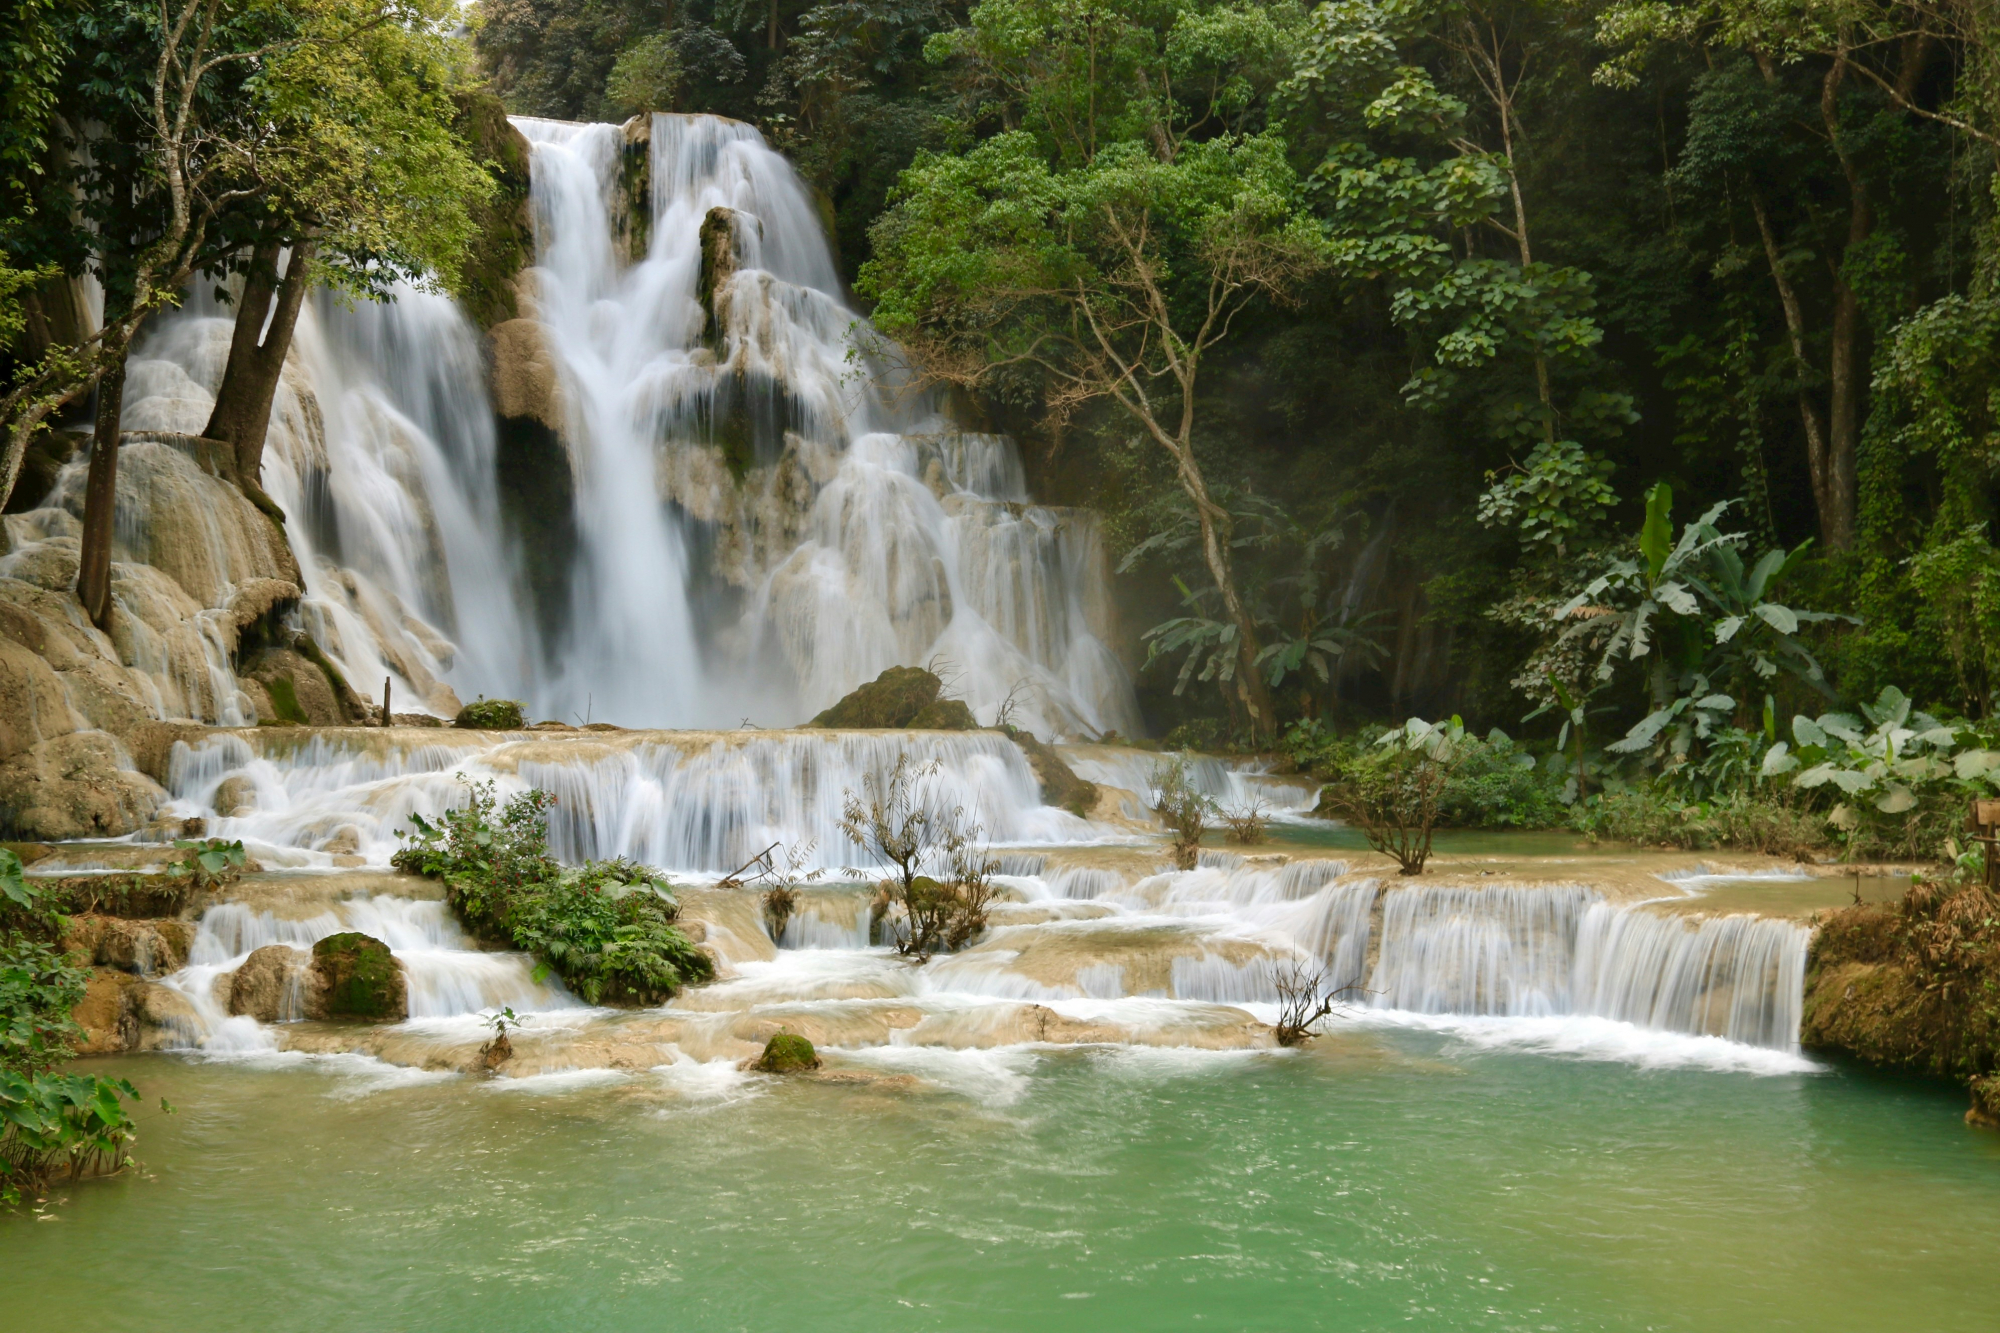 découvrez la beauté naturelle et la richesse culturelle du laos, une destination unique en asie du sud-est.